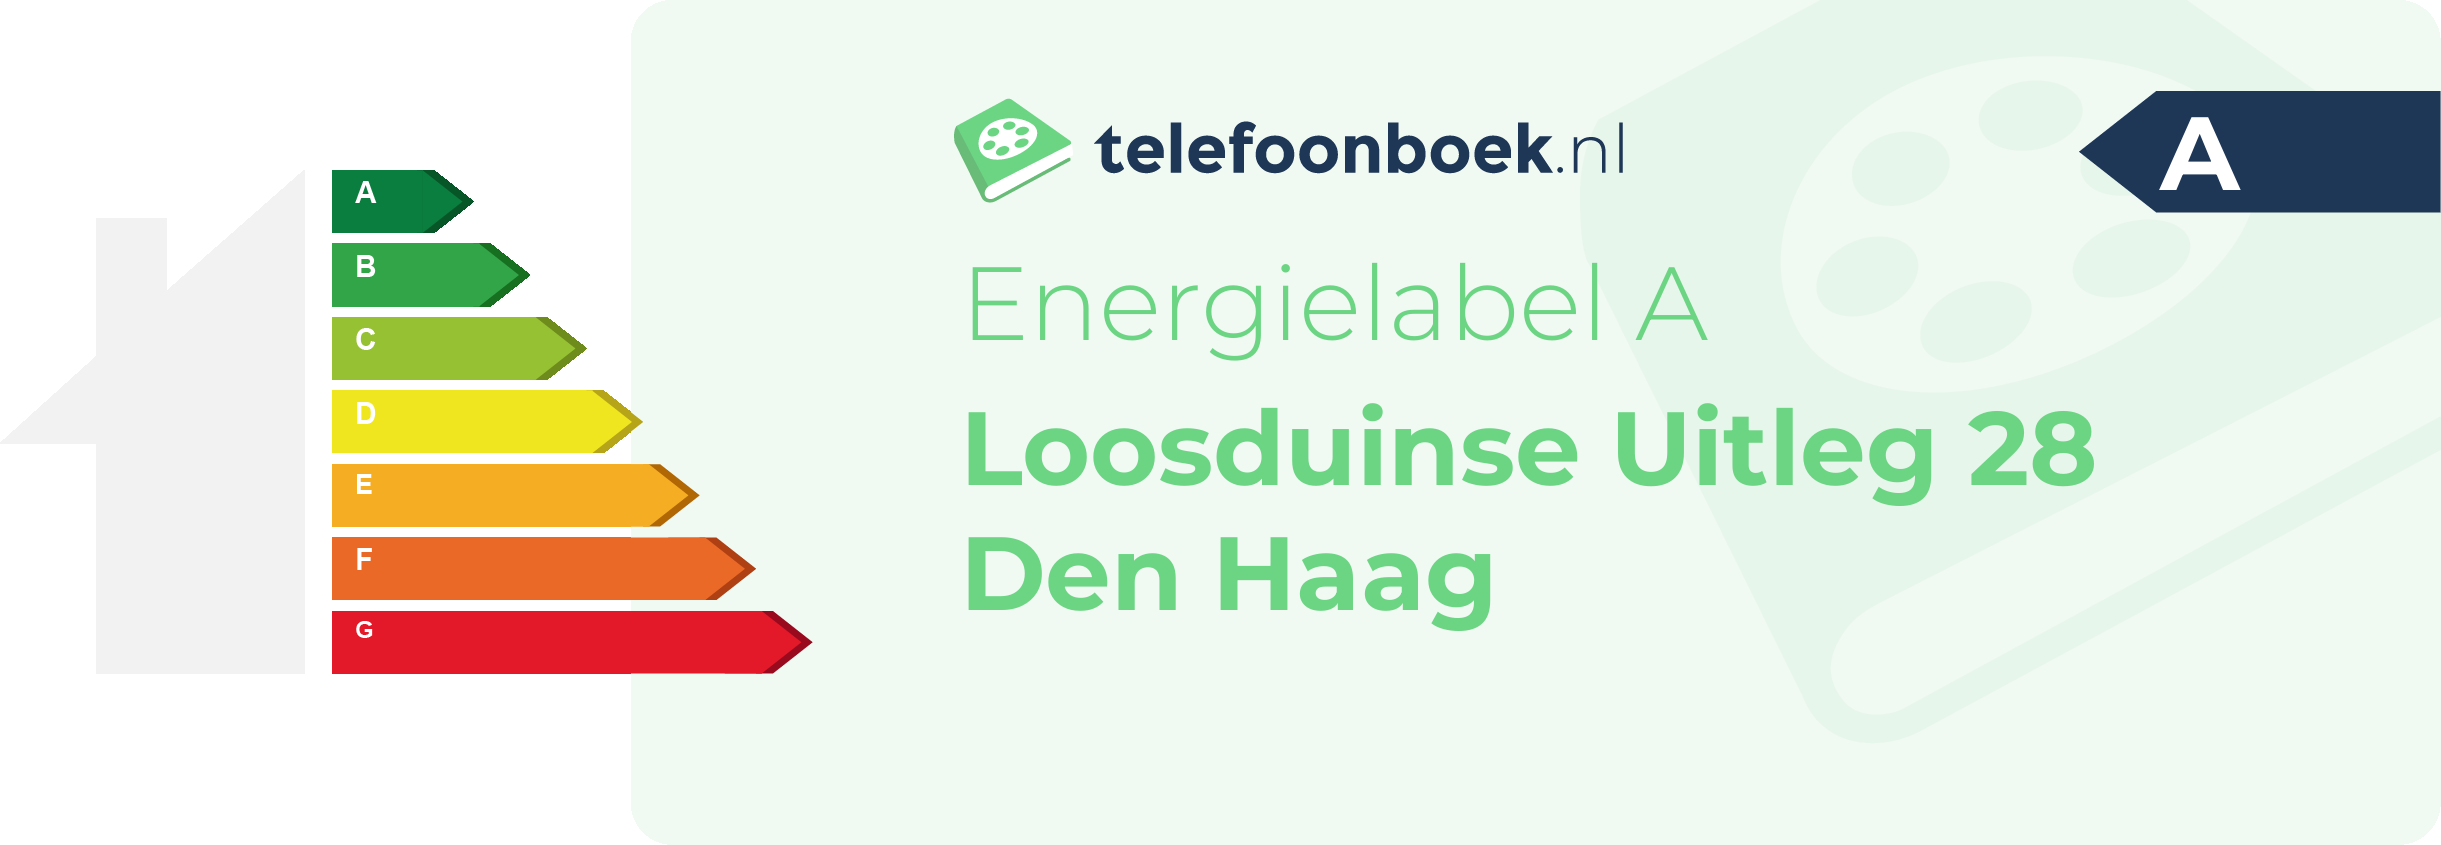 Energielabel Loosduinse Uitleg 28 Den Haag